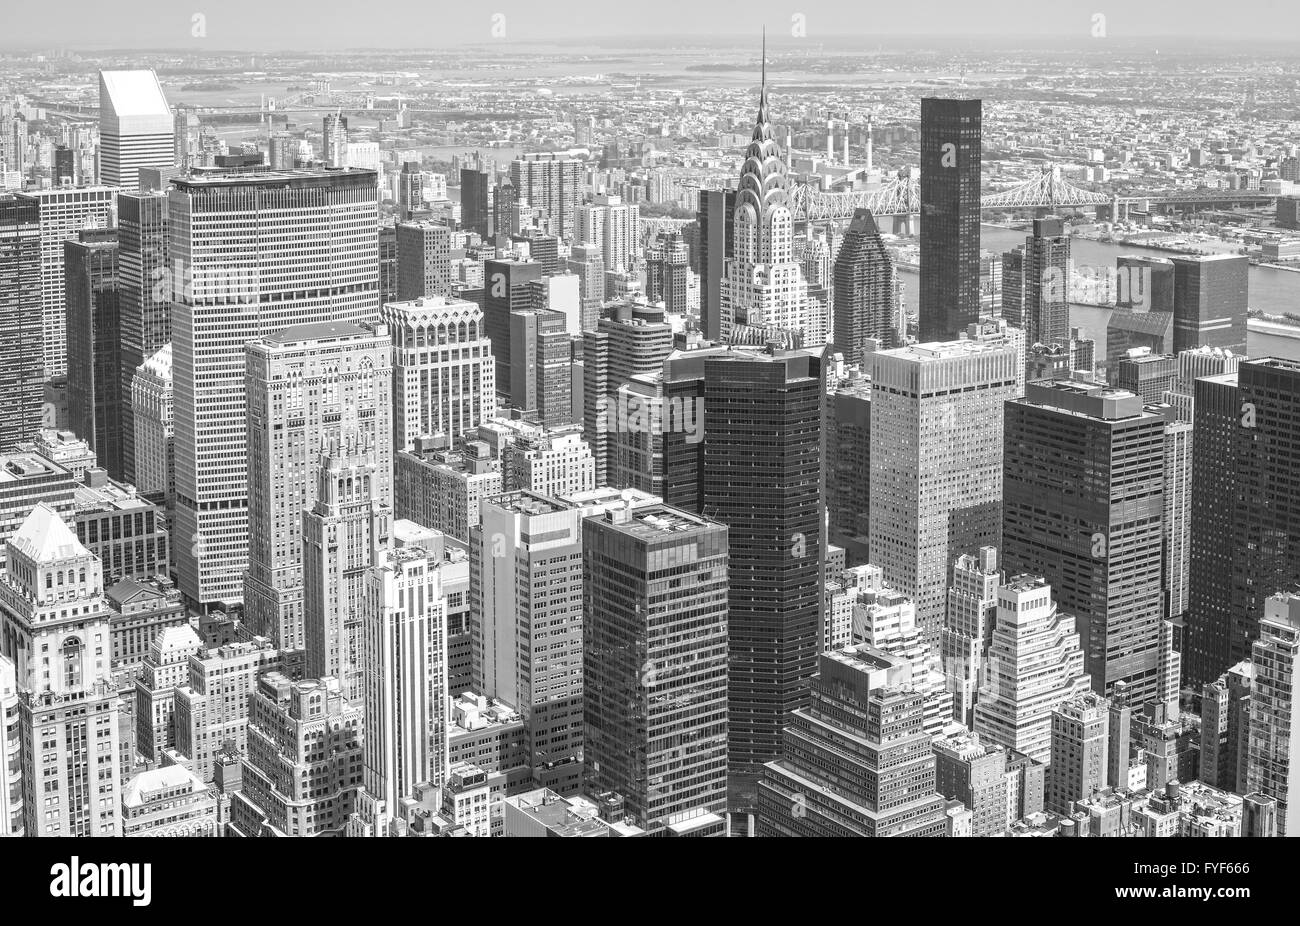 Immagine in bianco e nero della skyline di Manhattan, New York City, Stati Uniti d'America. Foto Stock